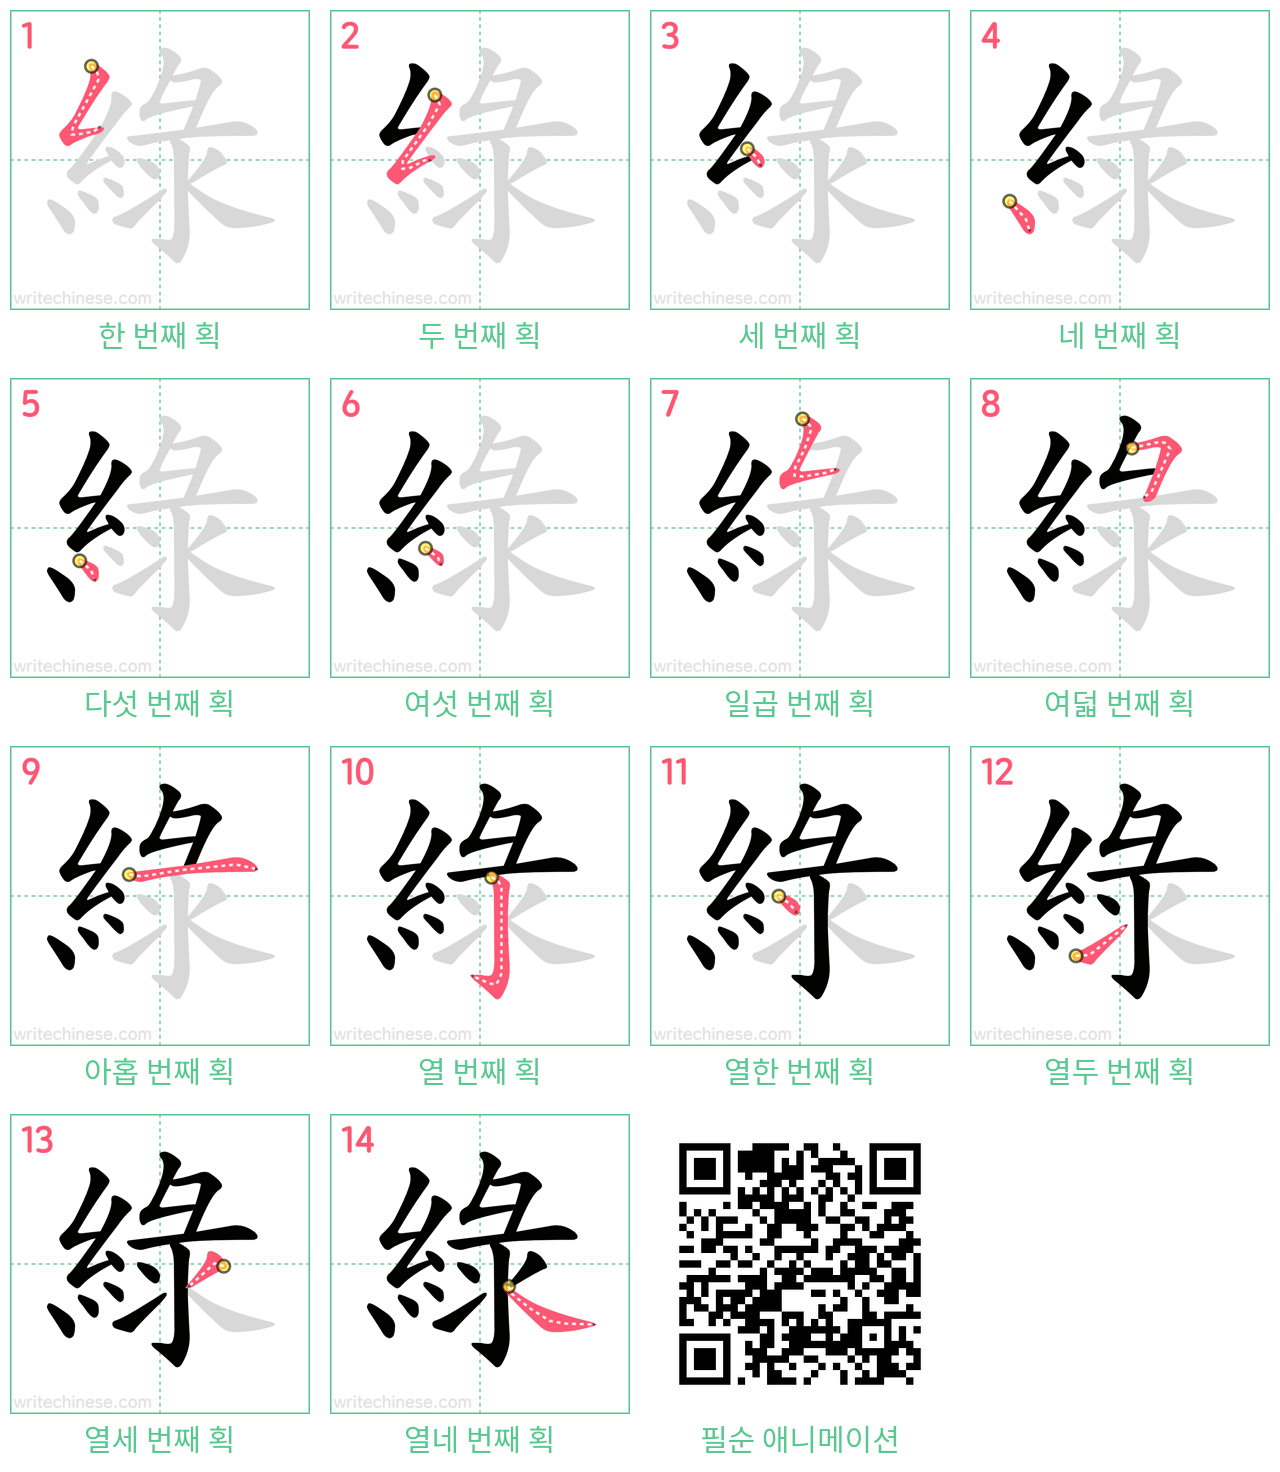 綠 step-by-step stroke order diagrams